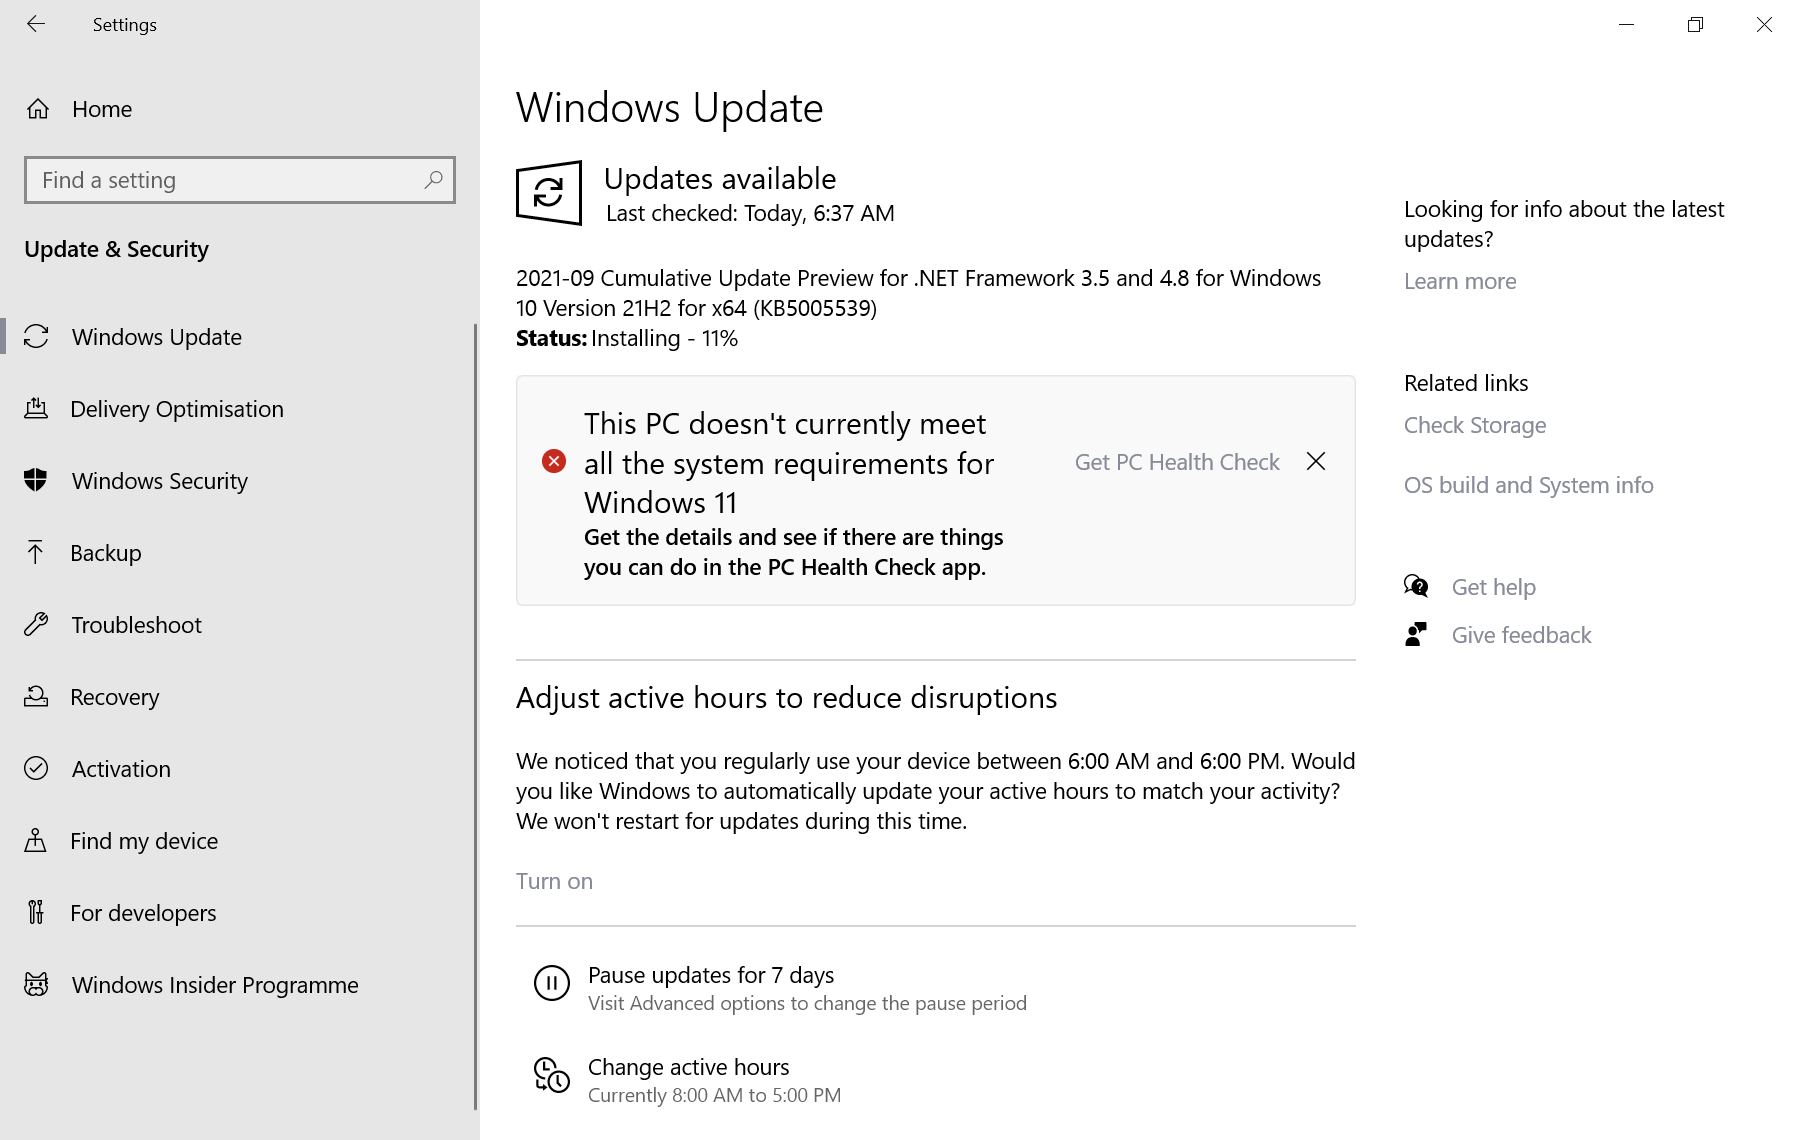 لا يلبي جهاز الكمبيوتر هذا حاليًا جميع متطلبات النظام الخاصة بـ windows 11